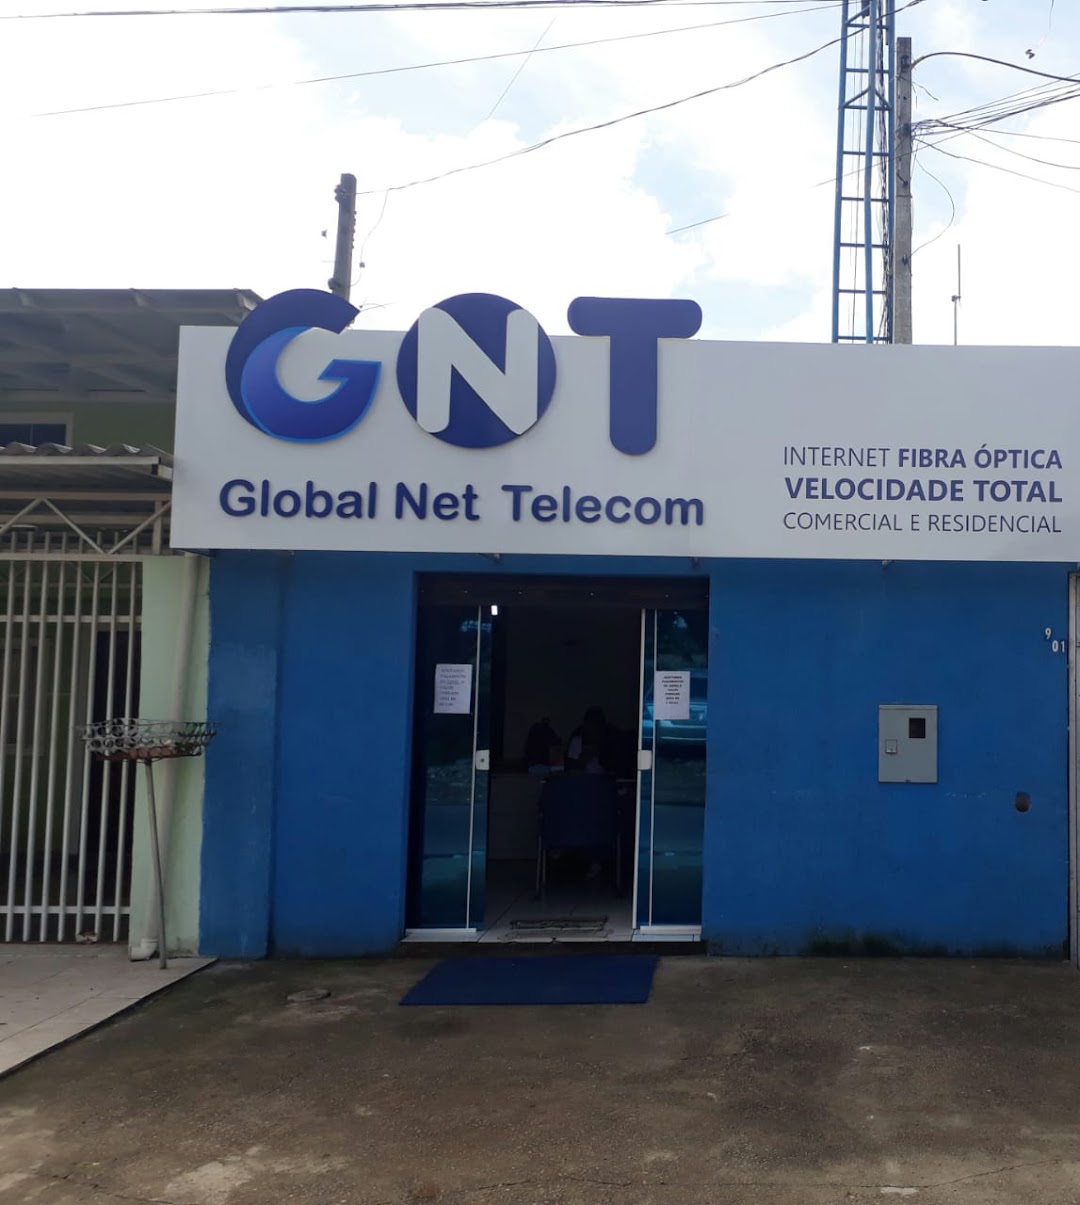 GNT GLOBAL NET